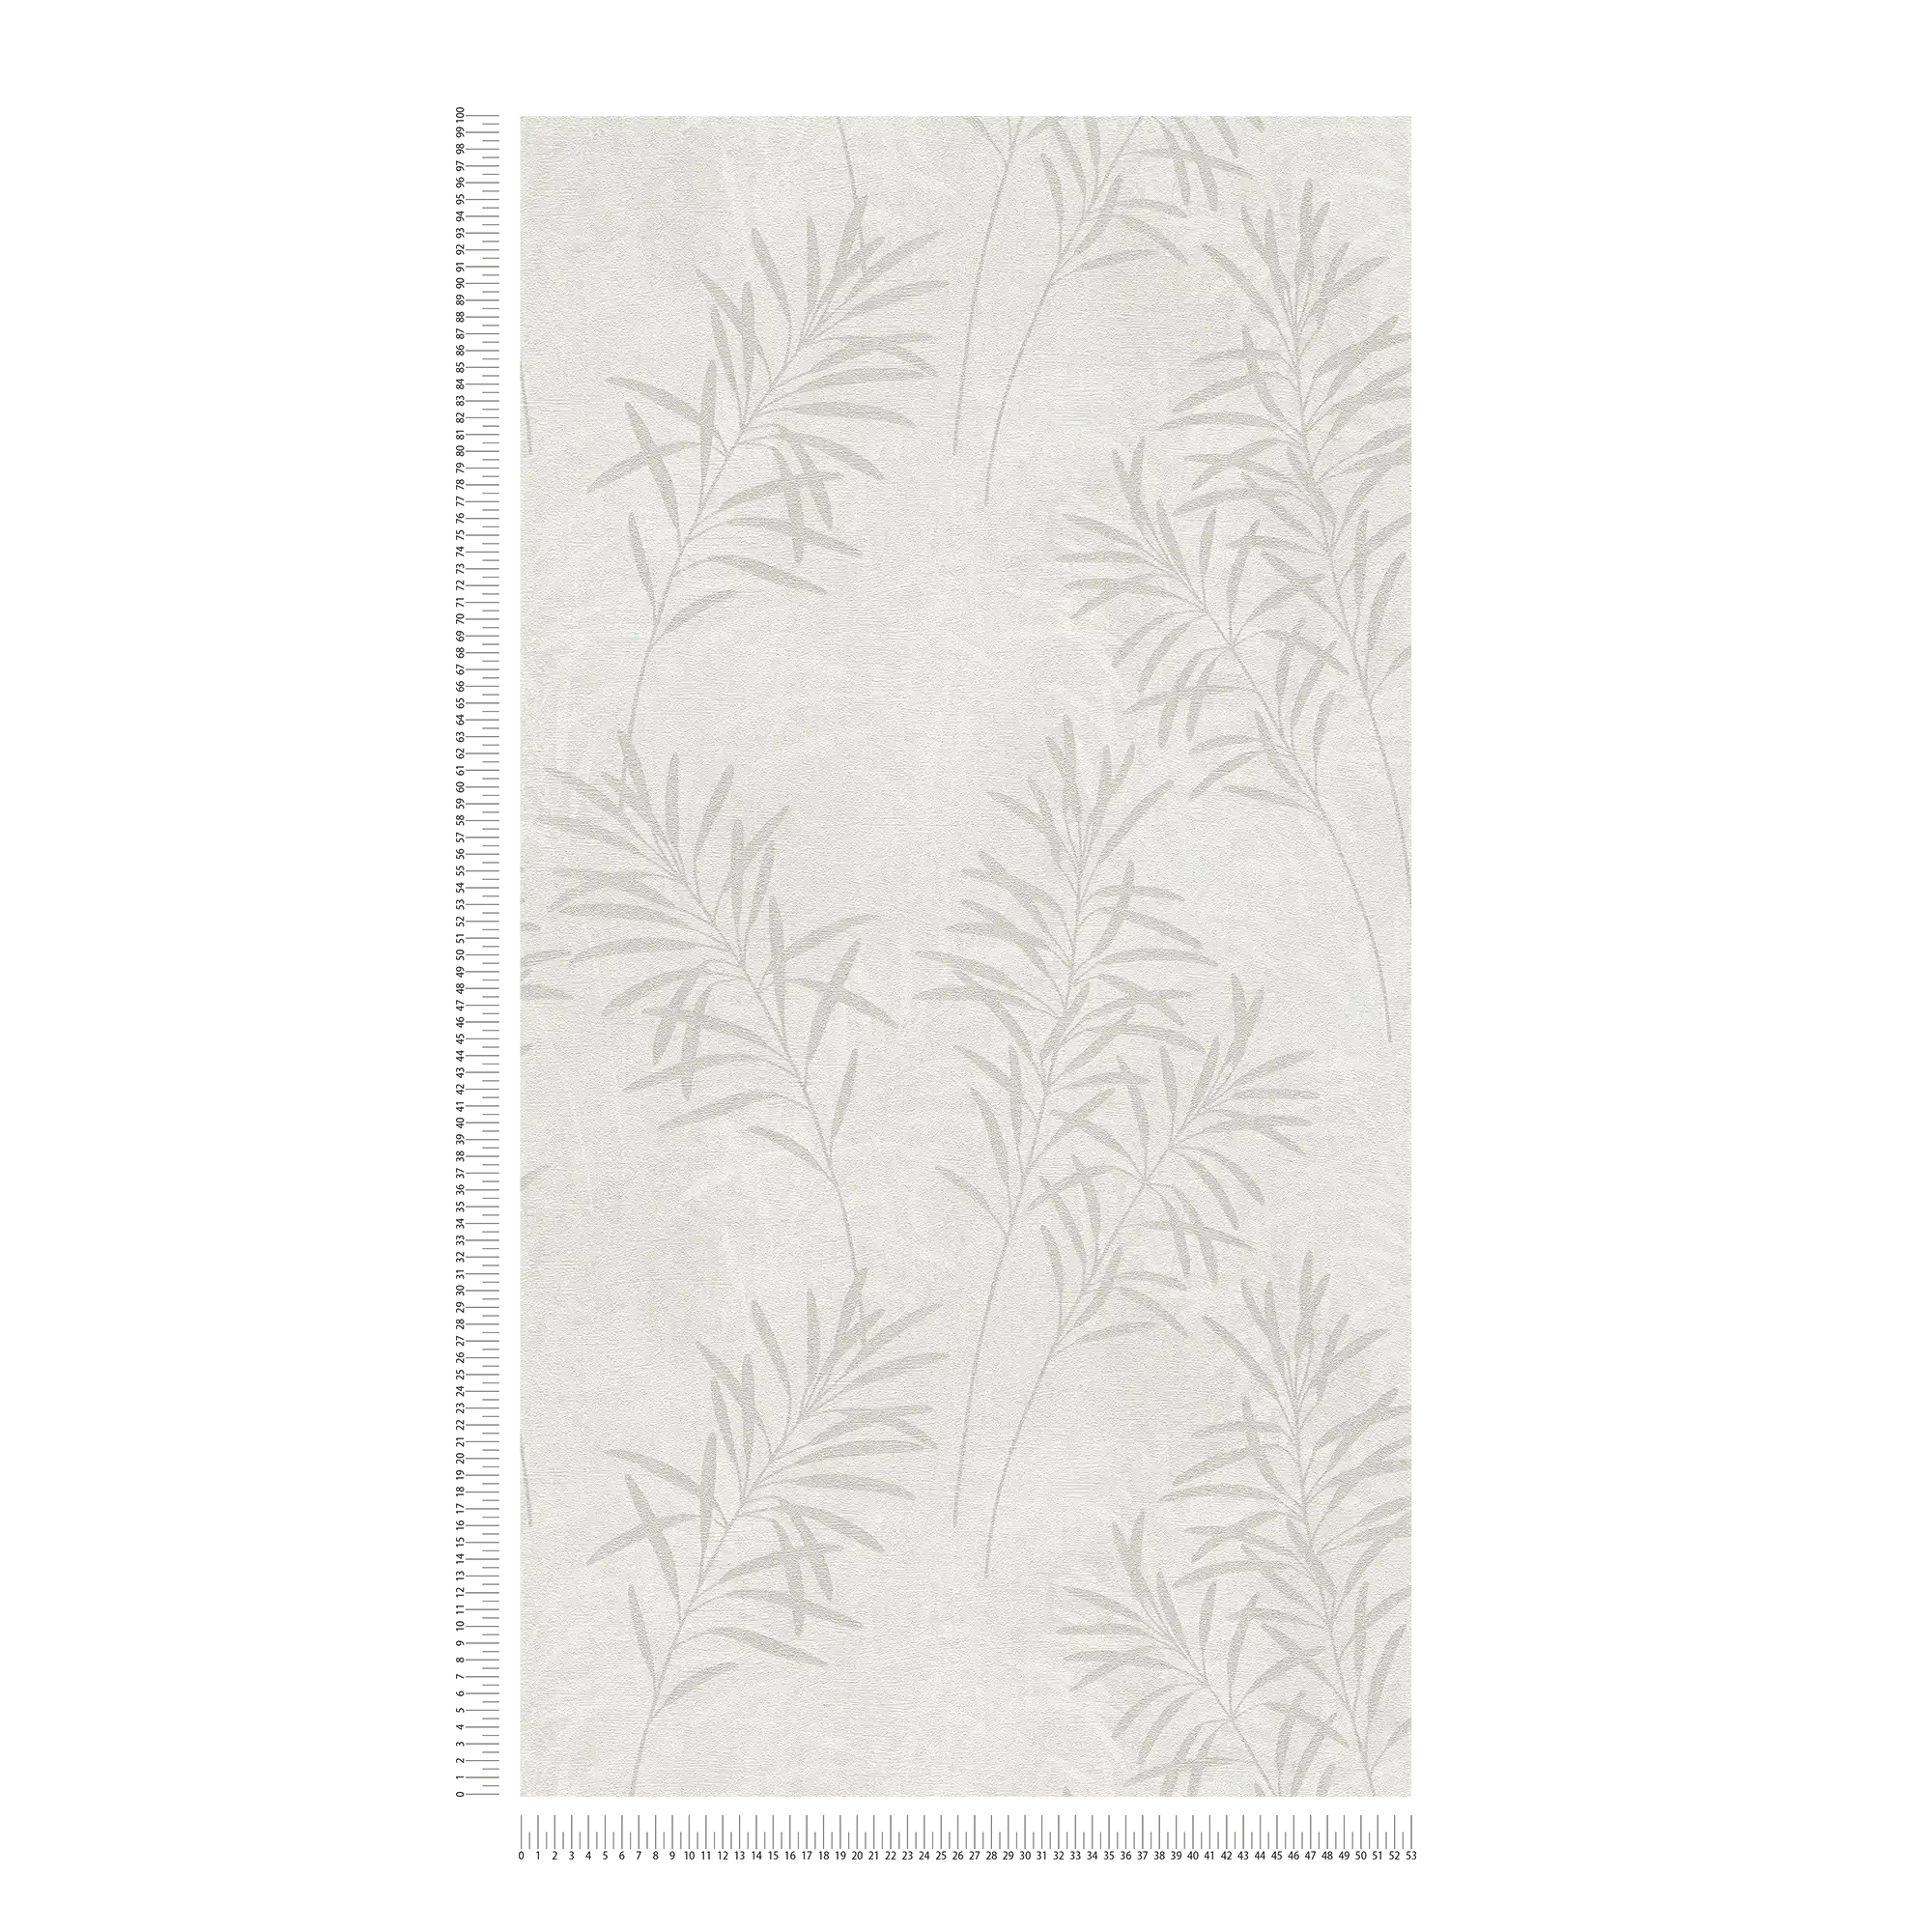             Papier peint intissé floral avec motif d'herbes et texture fine - blanc, gris, métallique
        